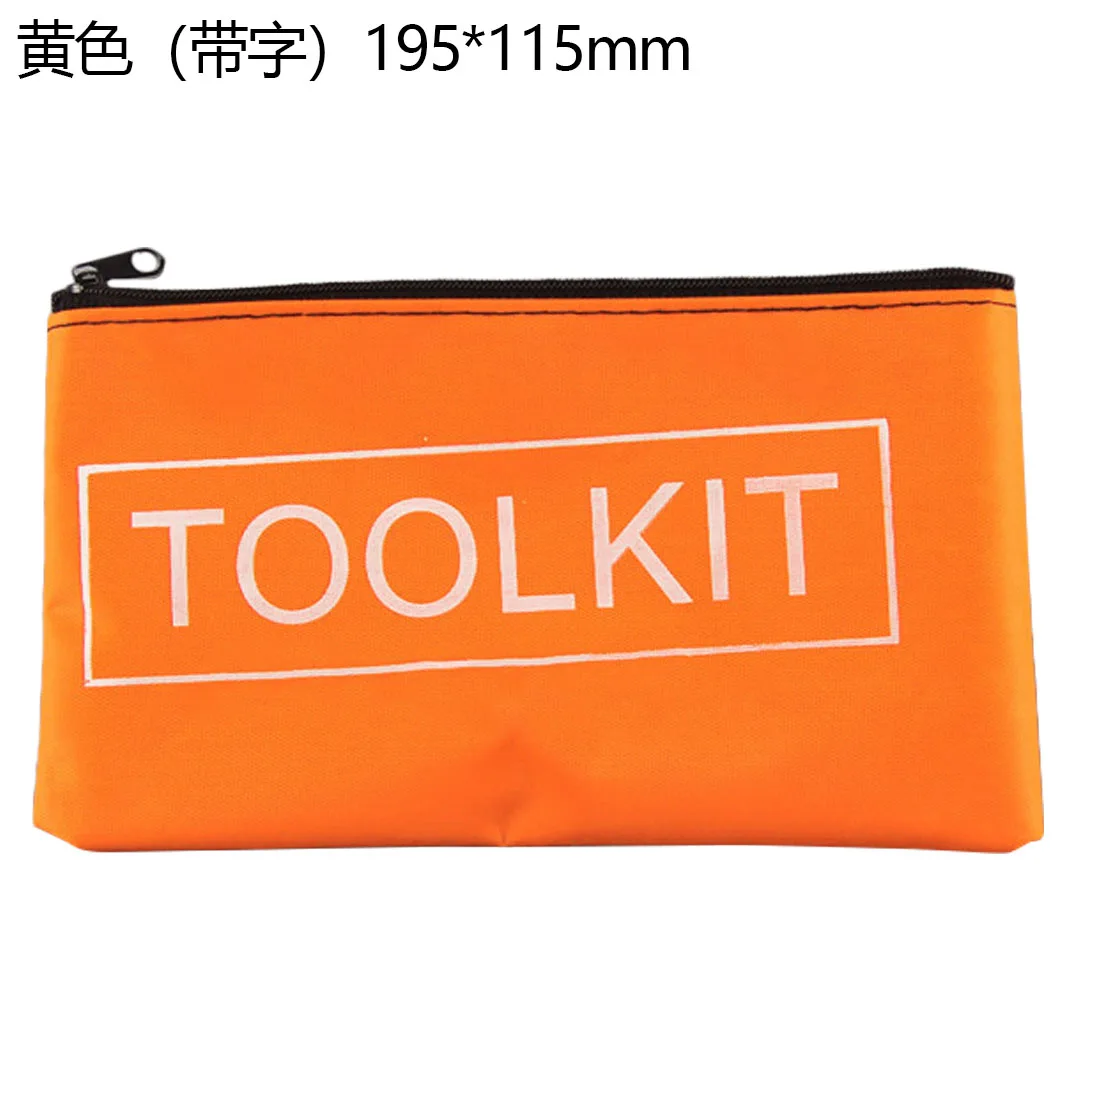 600D сумка для инструментов из ткани Оксфорд чехол для инструментов мини набор инструментов сумка 19x11см универсальный размер удобная сумка для ручных инструментов карман - Цвет: Yellow